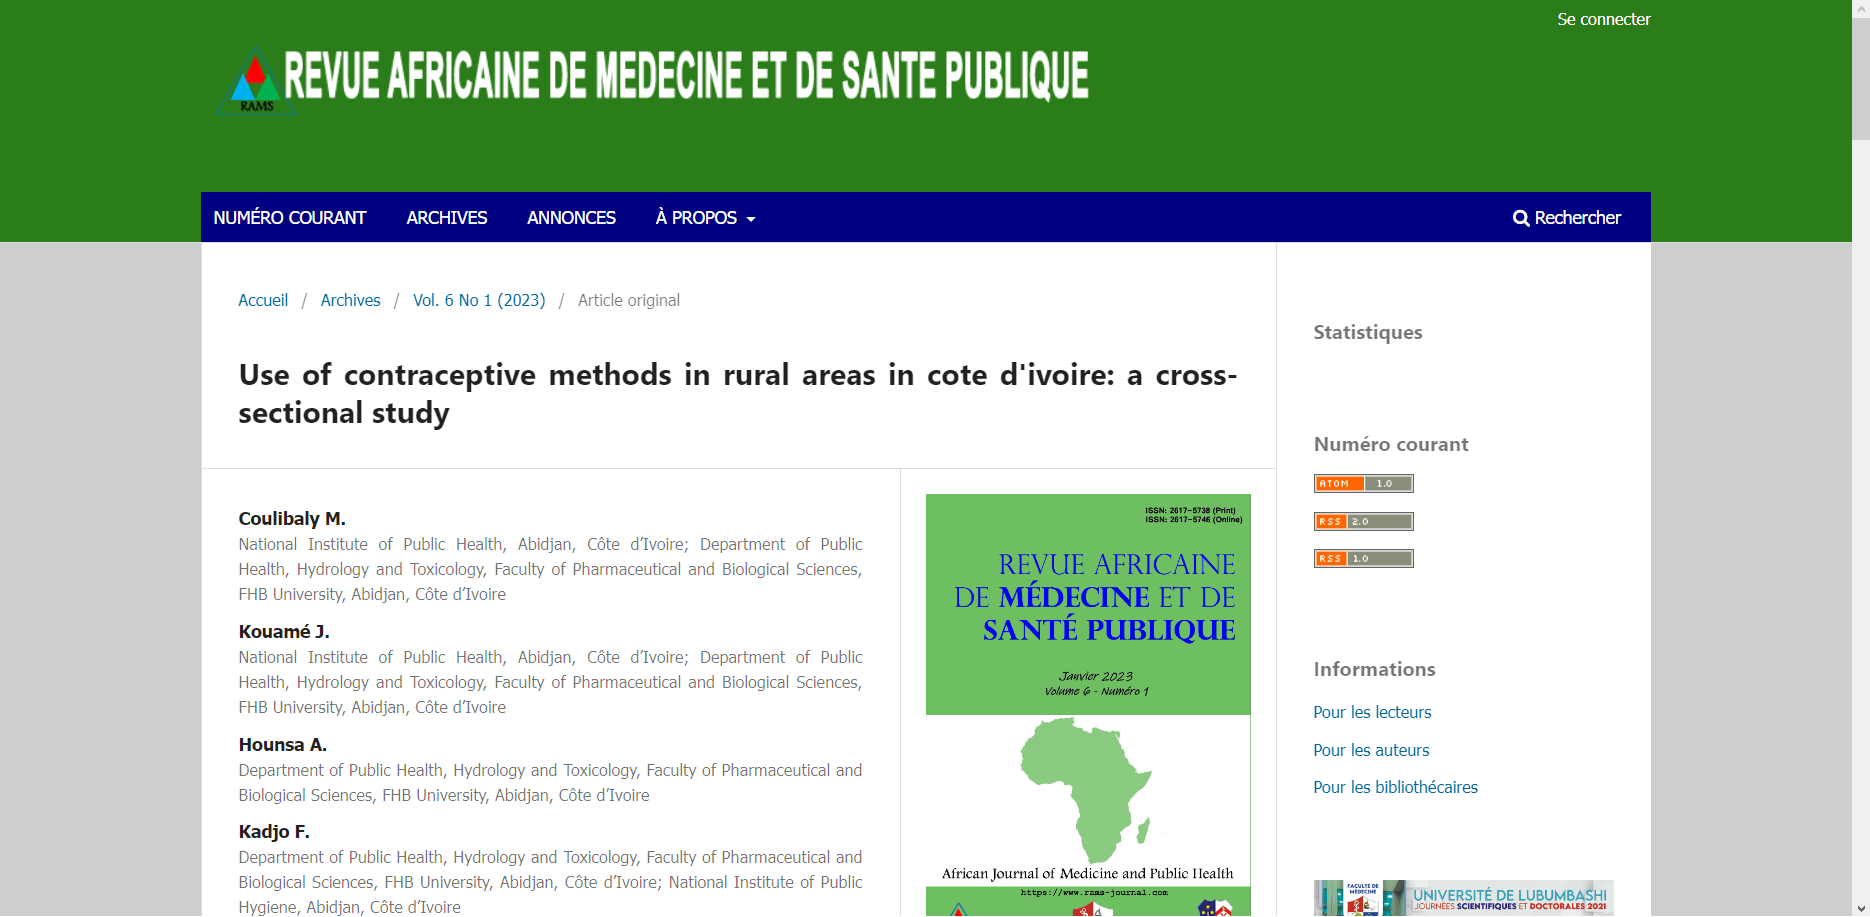 Conception du site de la REVUE AFRICAINE DE MEDECINE ET SANTE PUBLIQUE